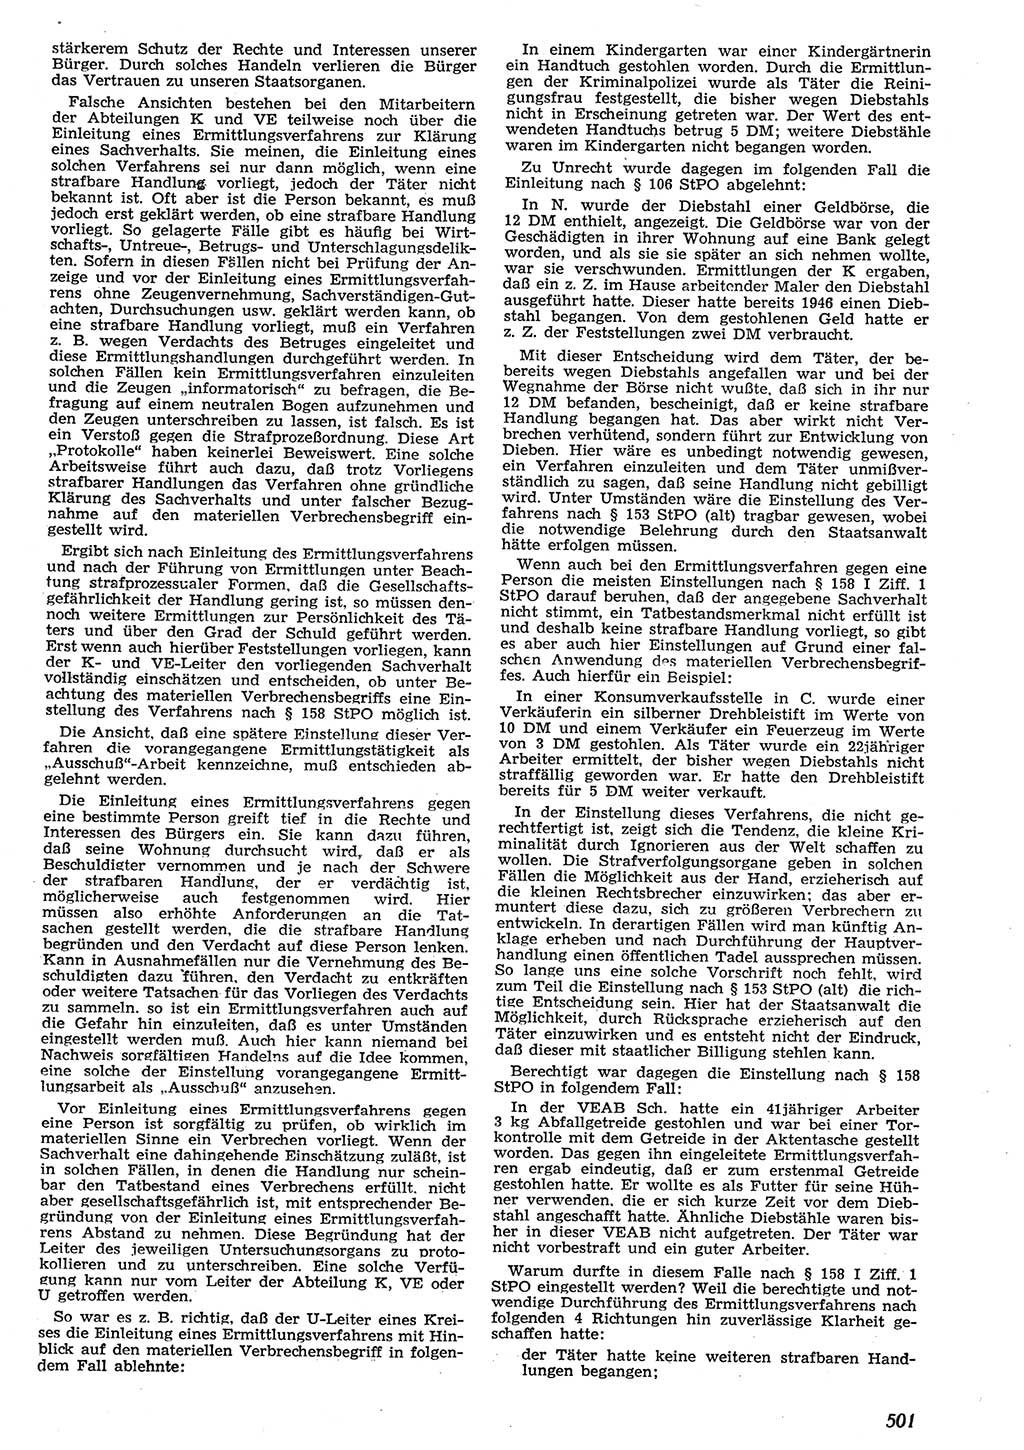 Neue Justiz (NJ), Zeitschrift für Recht und Rechtswissenschaft [Deutsche Demokratische Republik (DDR)], 10. Jahrgang 1956, Seite 501 (NJ DDR 1956, S. 501)